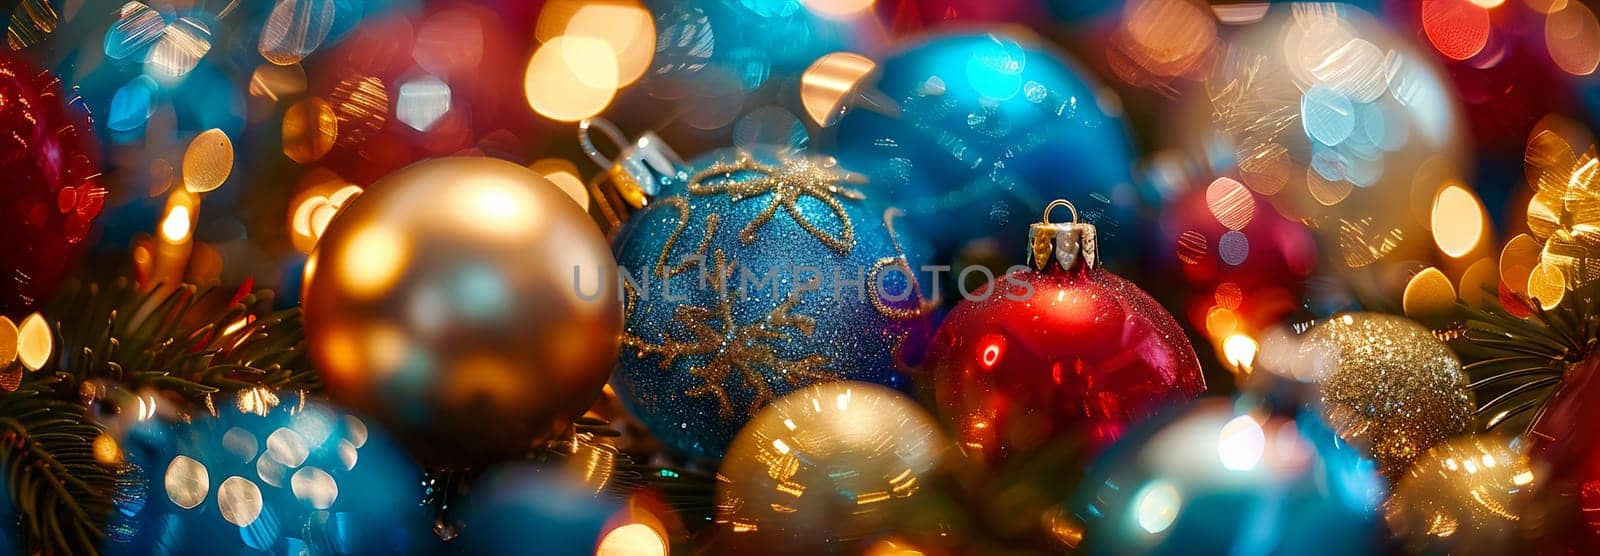 Vibrant Christmas ball ornaments nestled among pine branches against glittering festive bokeh light background